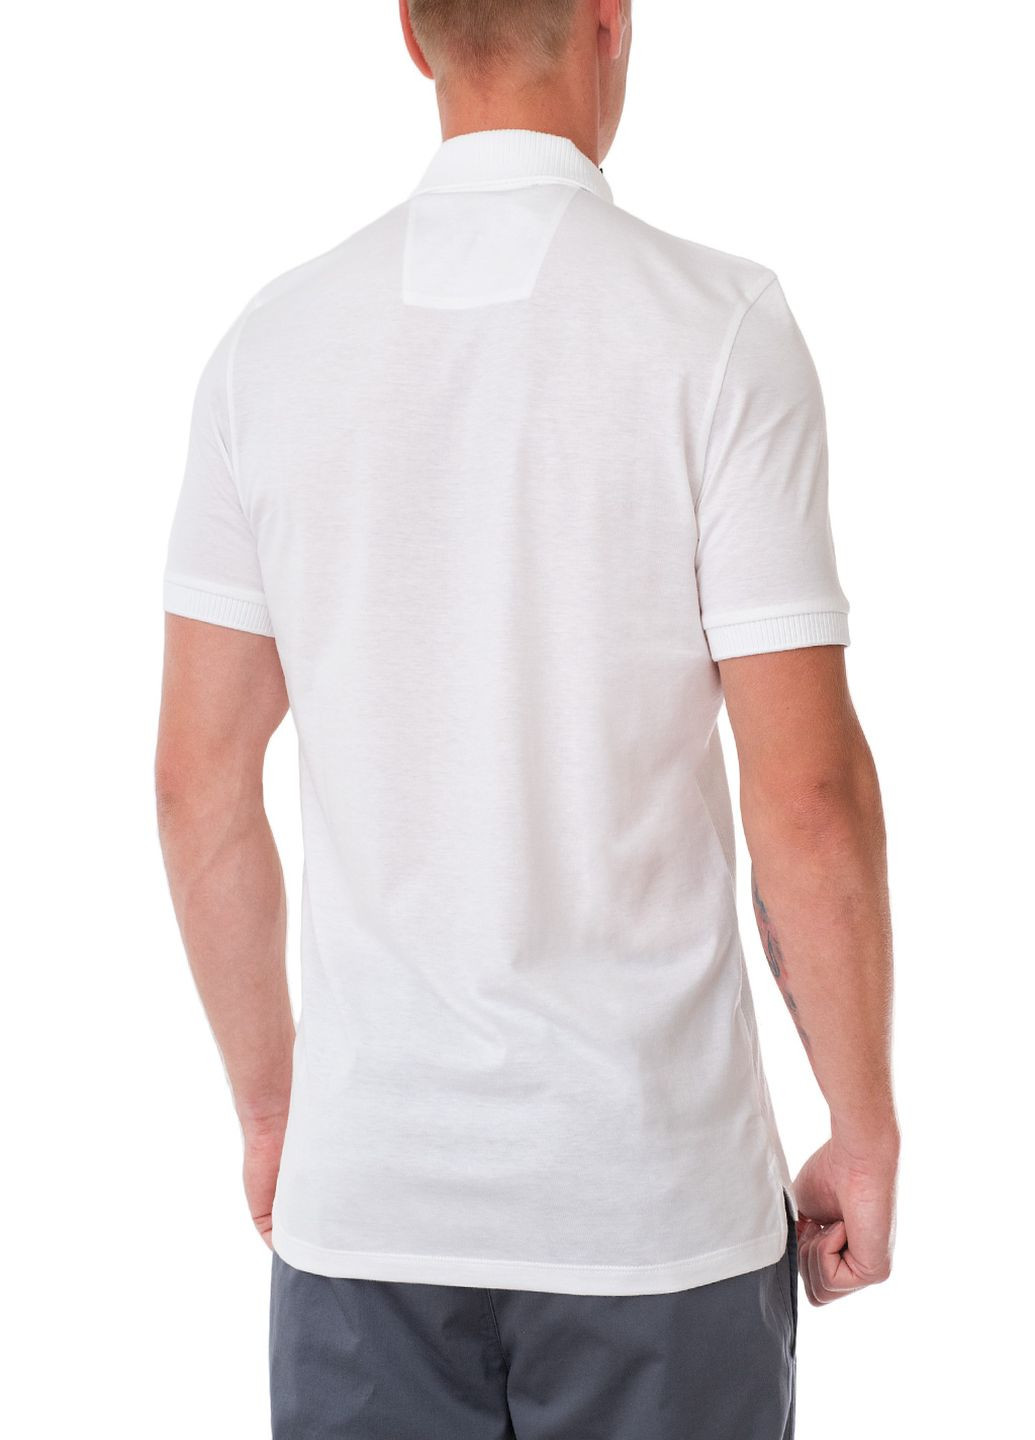 Белая футболка-поло для мужчин Roy Robson однотонная